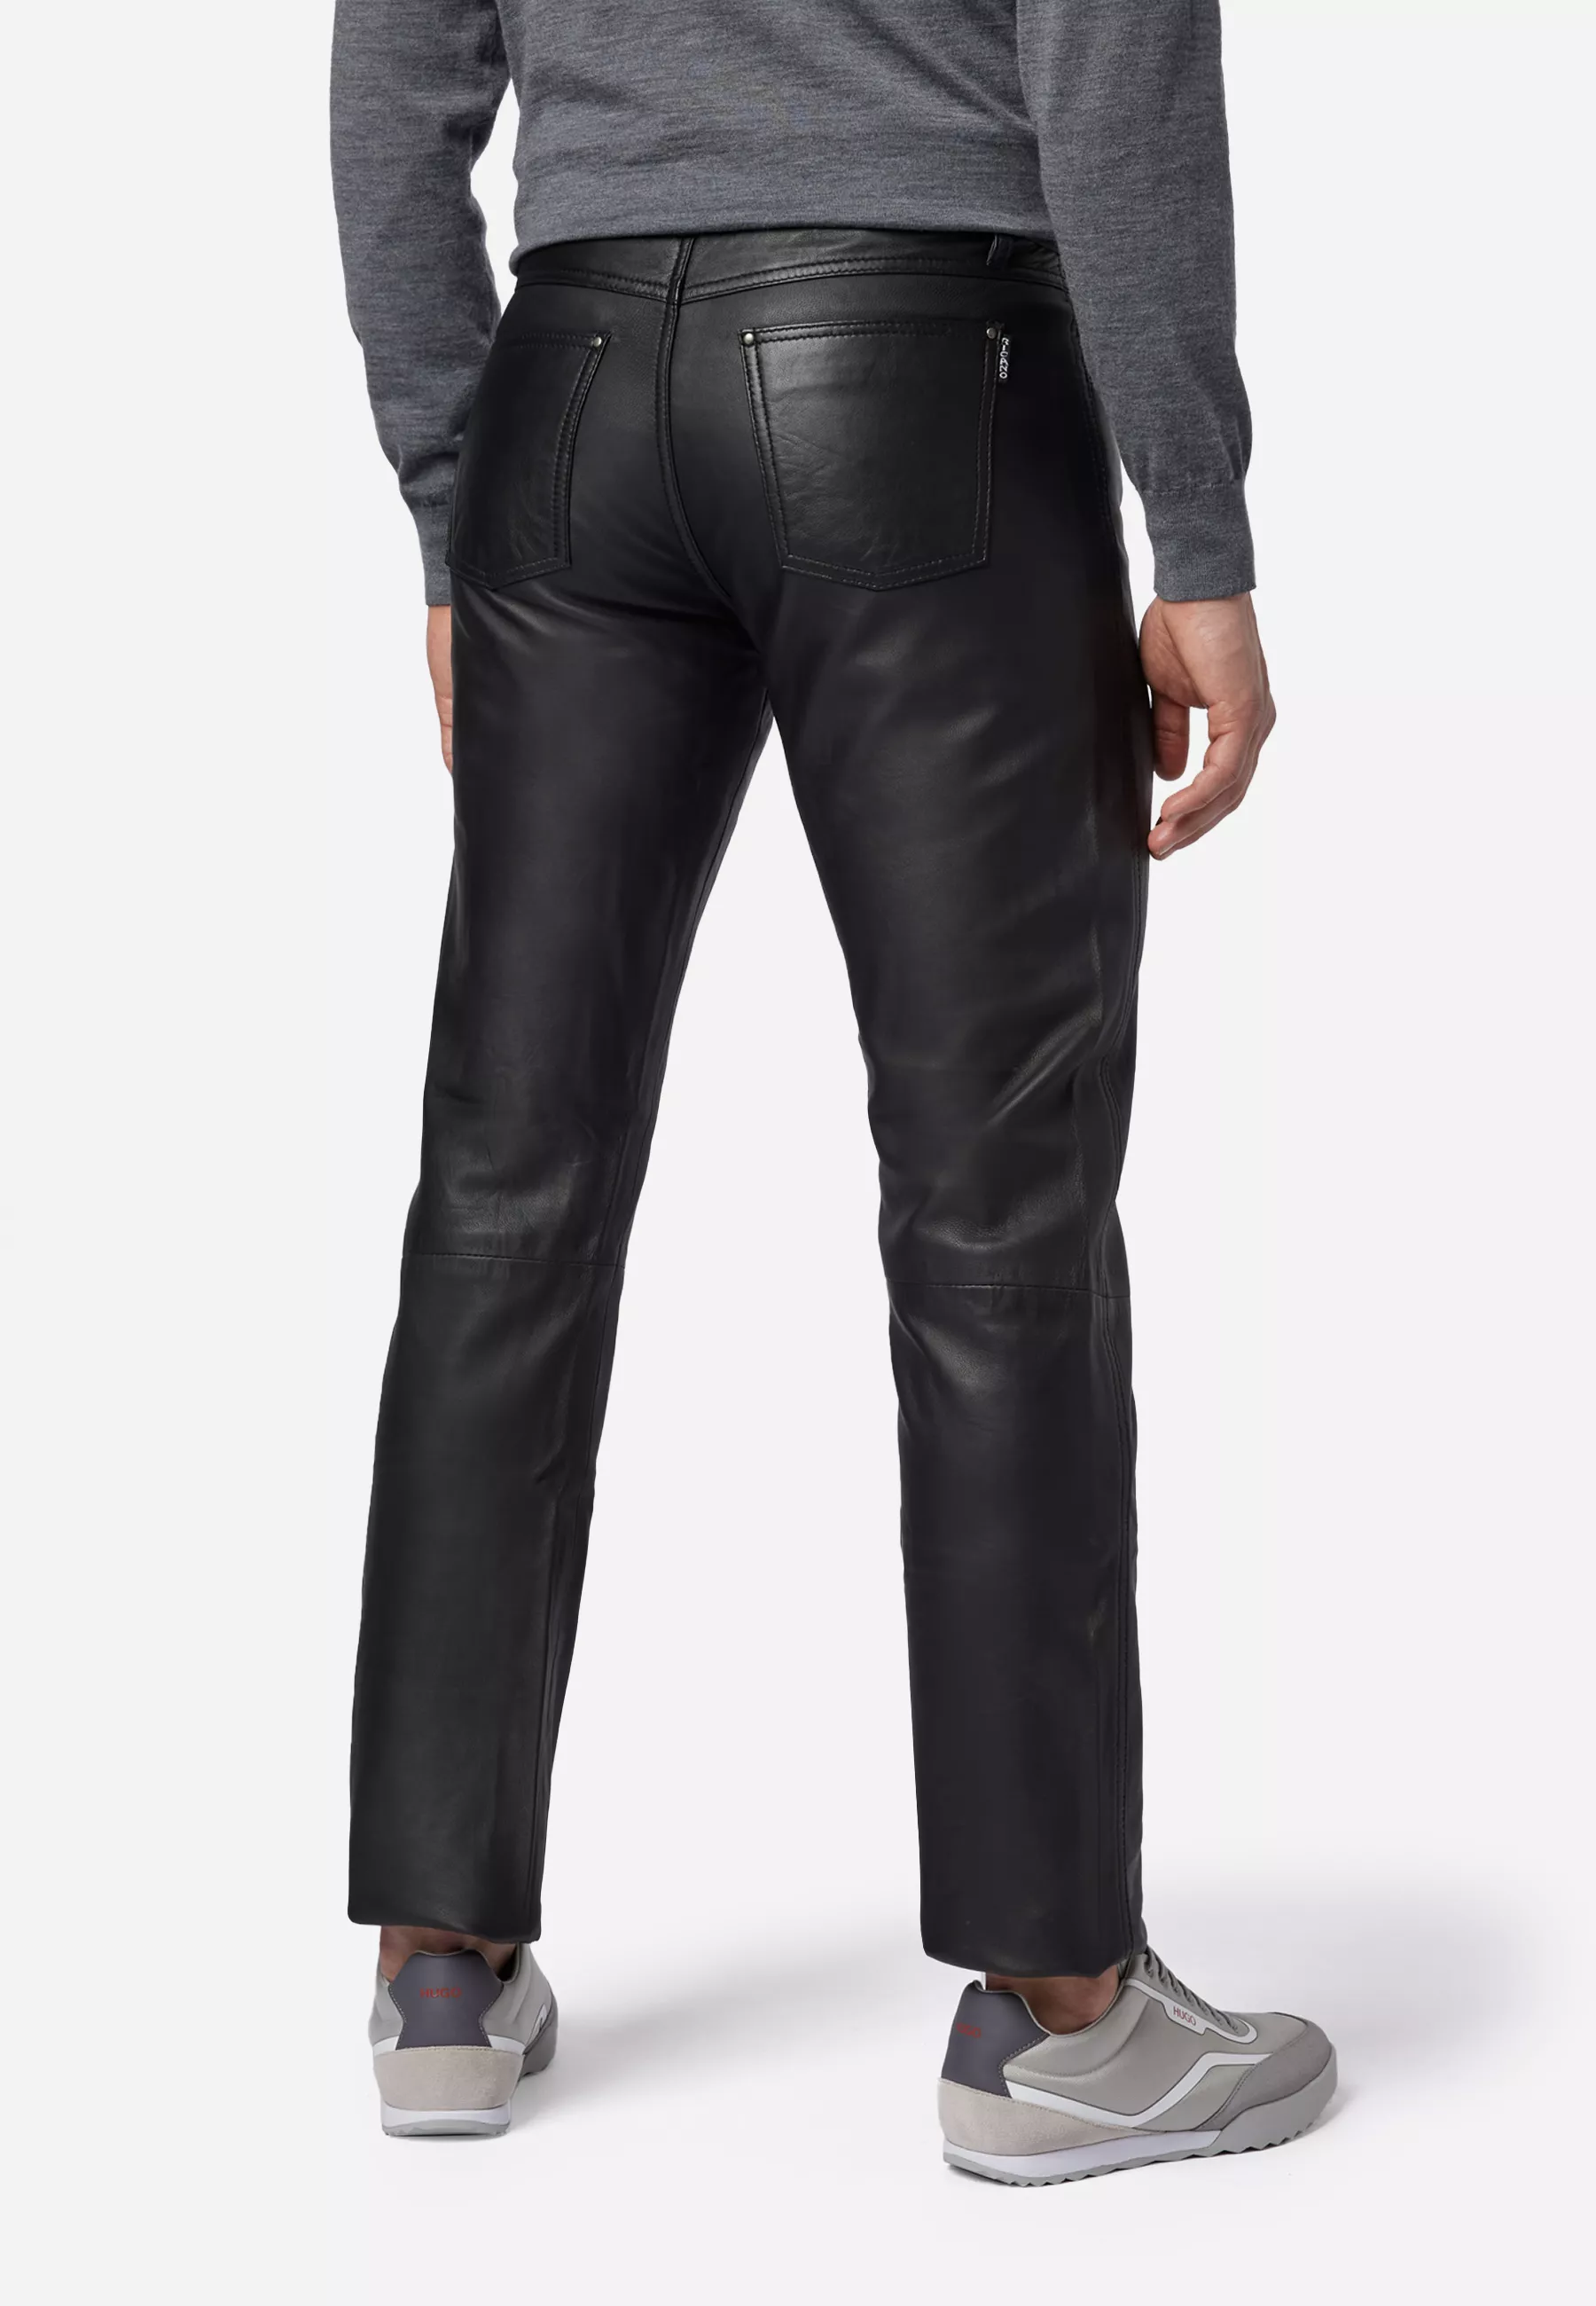 Herren Lederhose No. 3 TR Jeans in Schwarz von Ricano, Rückansicht am Model